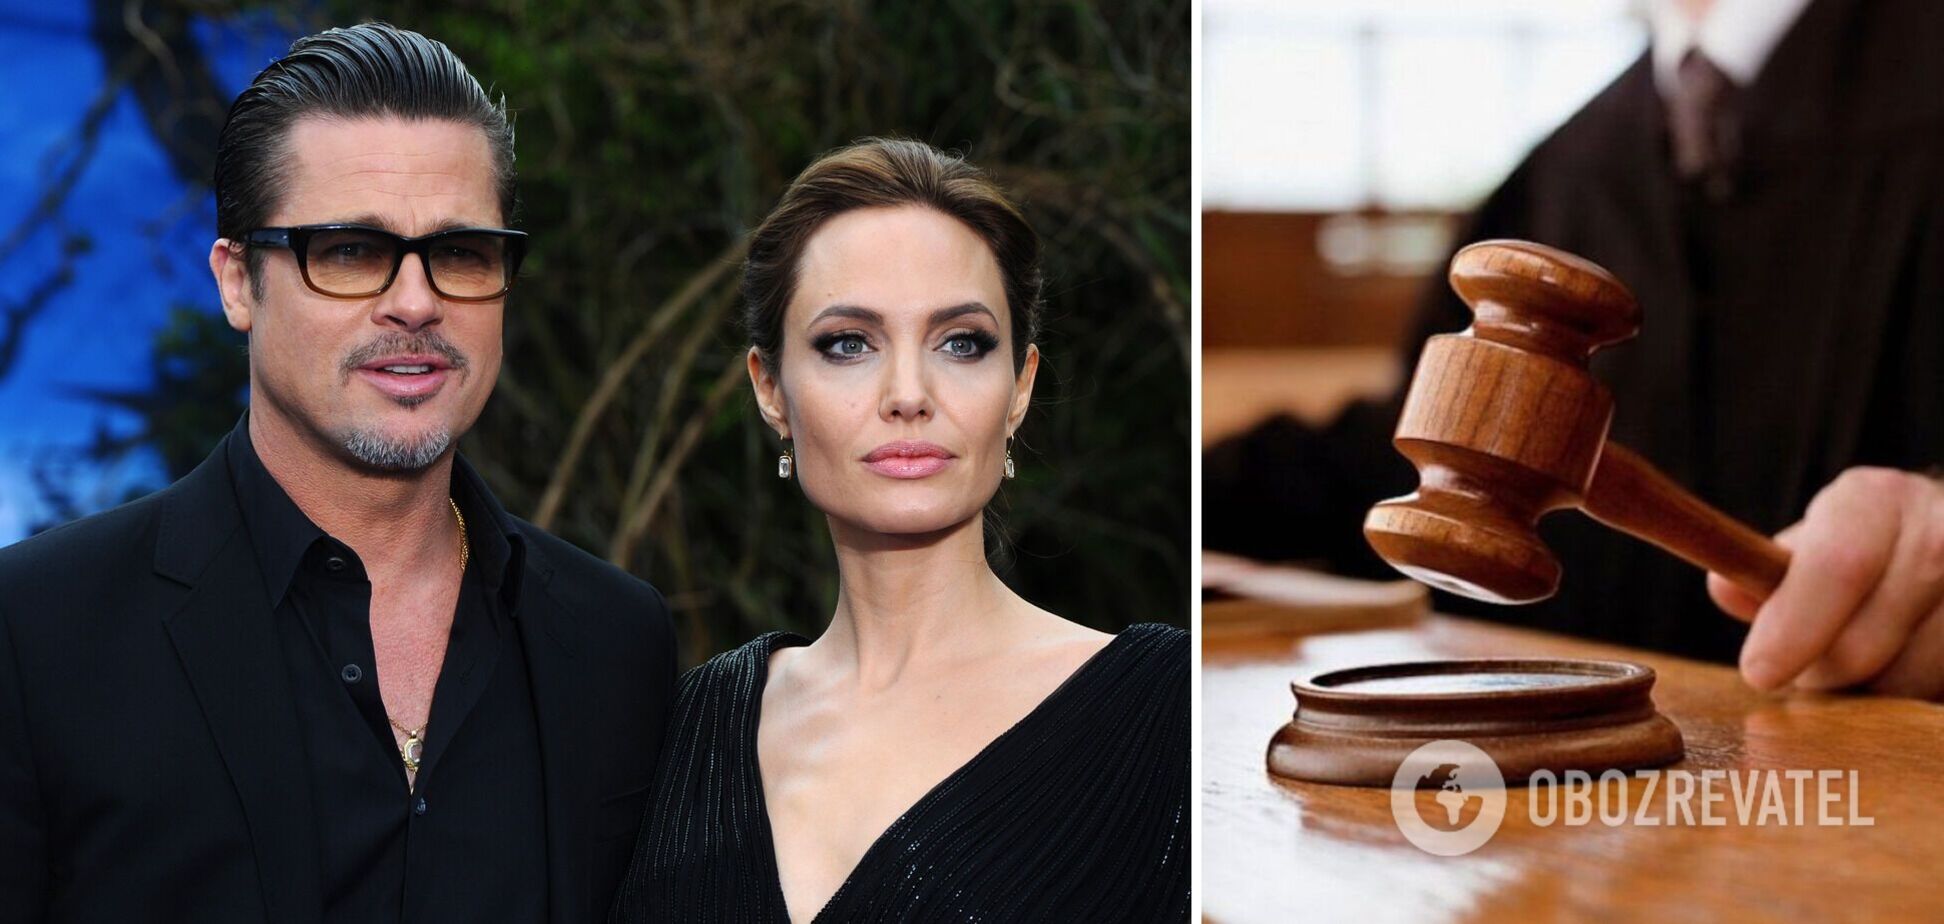 'Величезна перемога': Джолі та Бред Пітт після 7 років скандалів змогли 'помиритися' та вирішити спірні питання